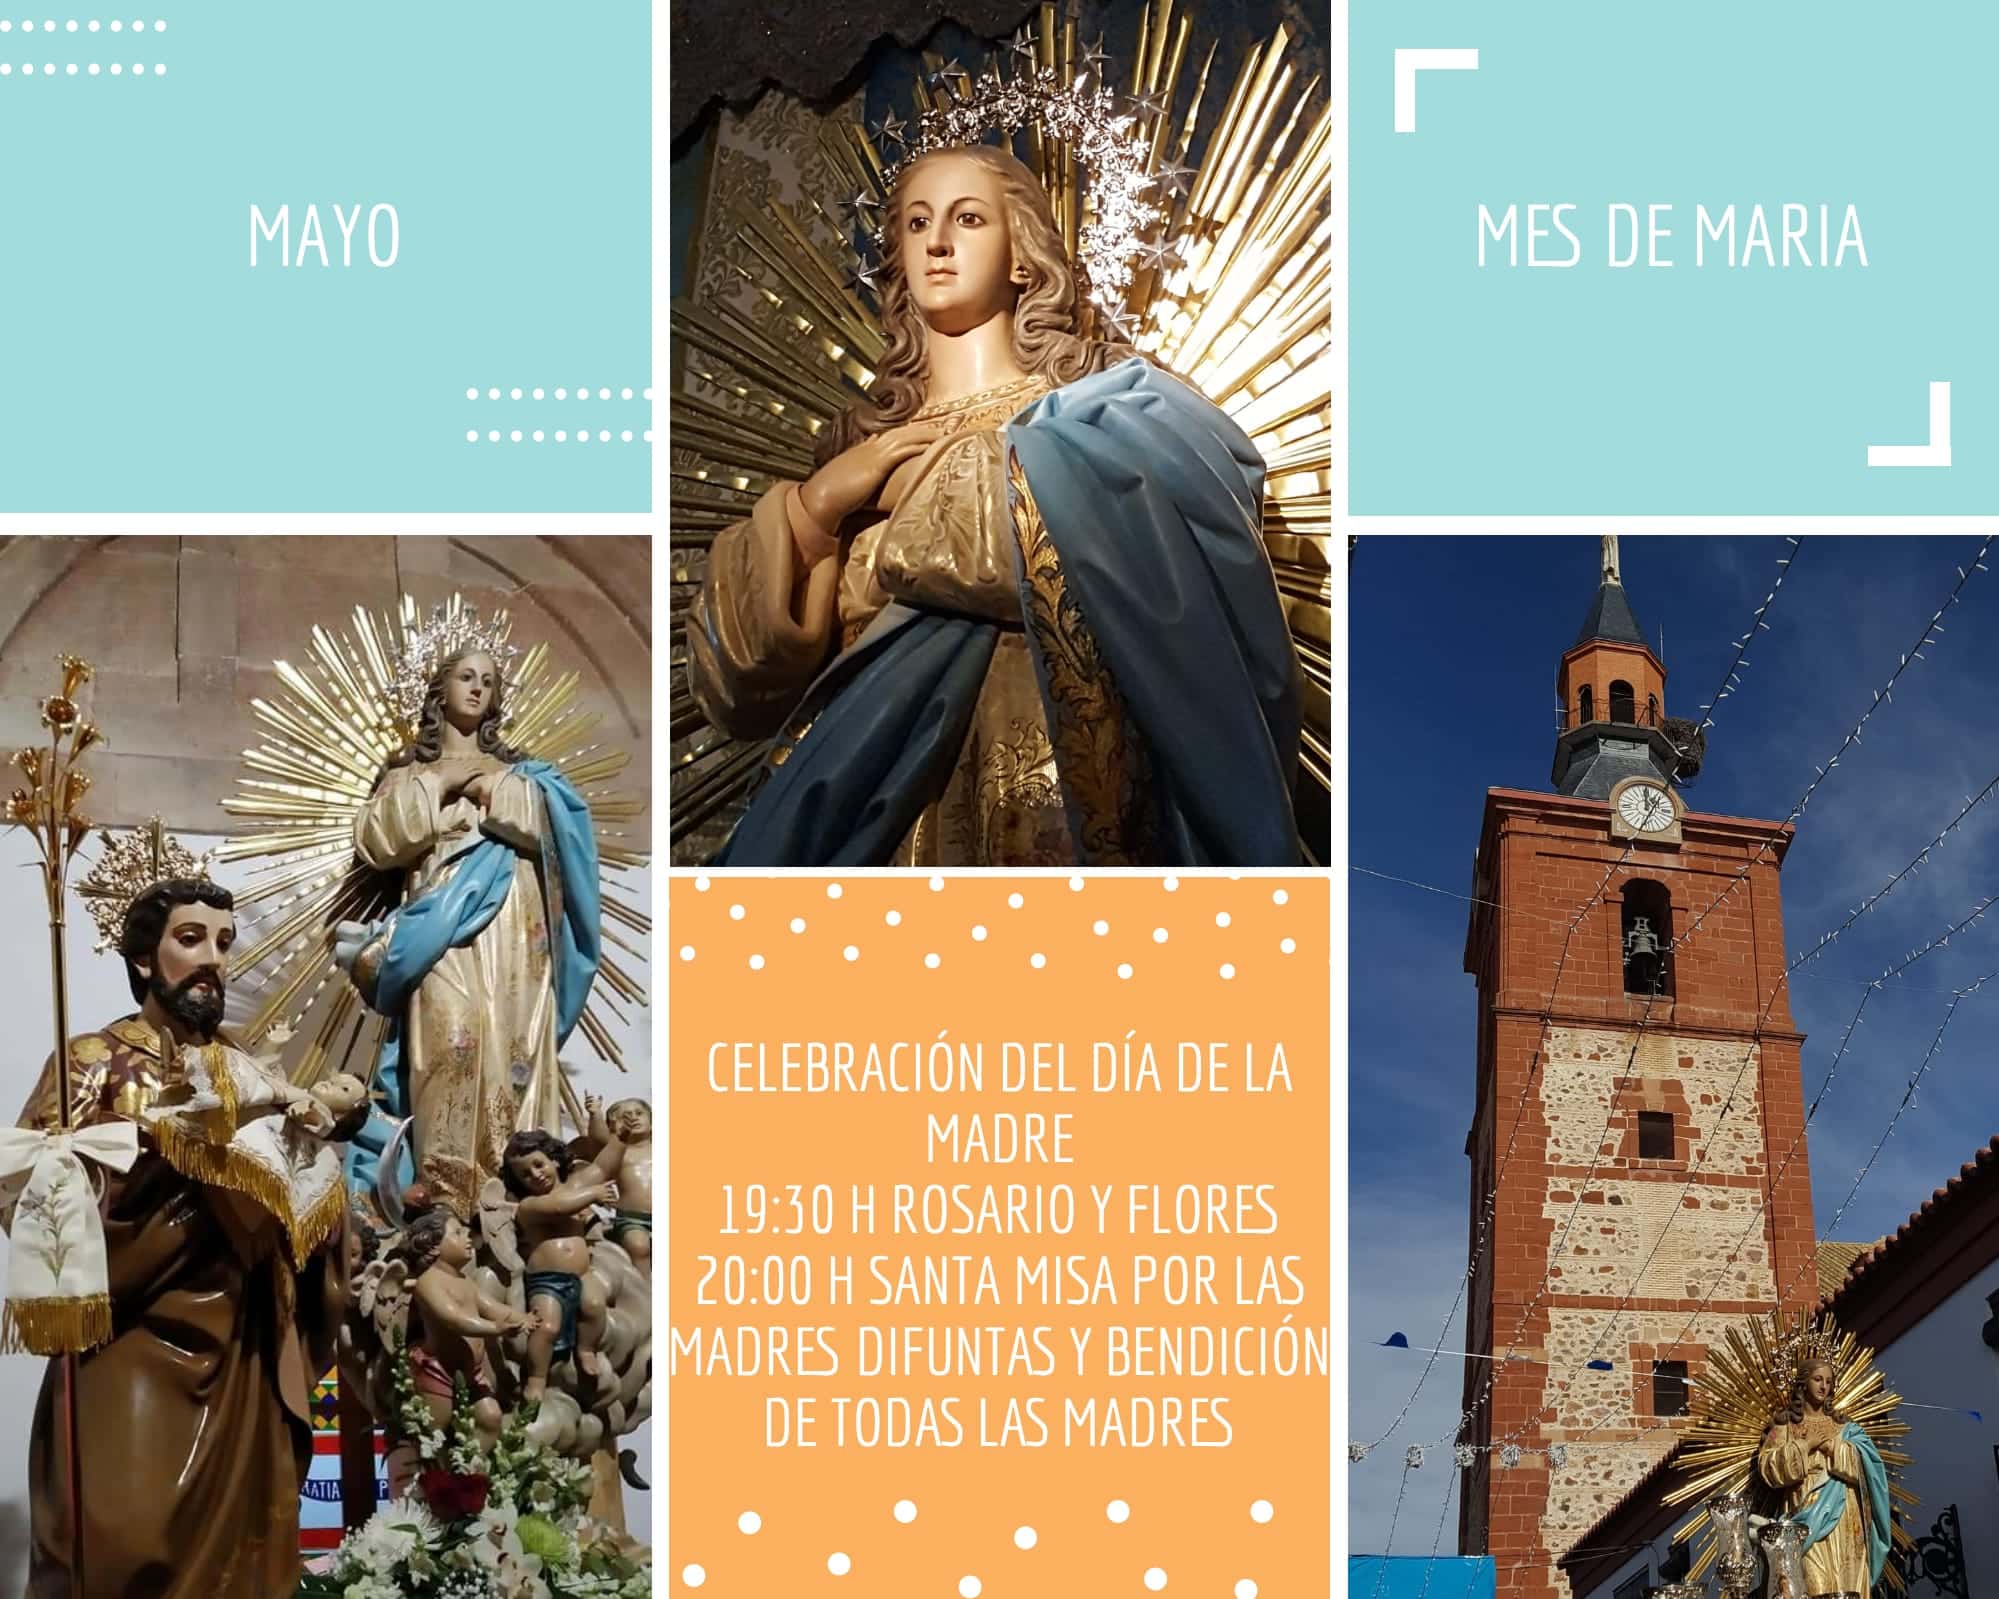 La parroquia Inmaculada Concepción inicia un mes de mayo dedicado a María 12